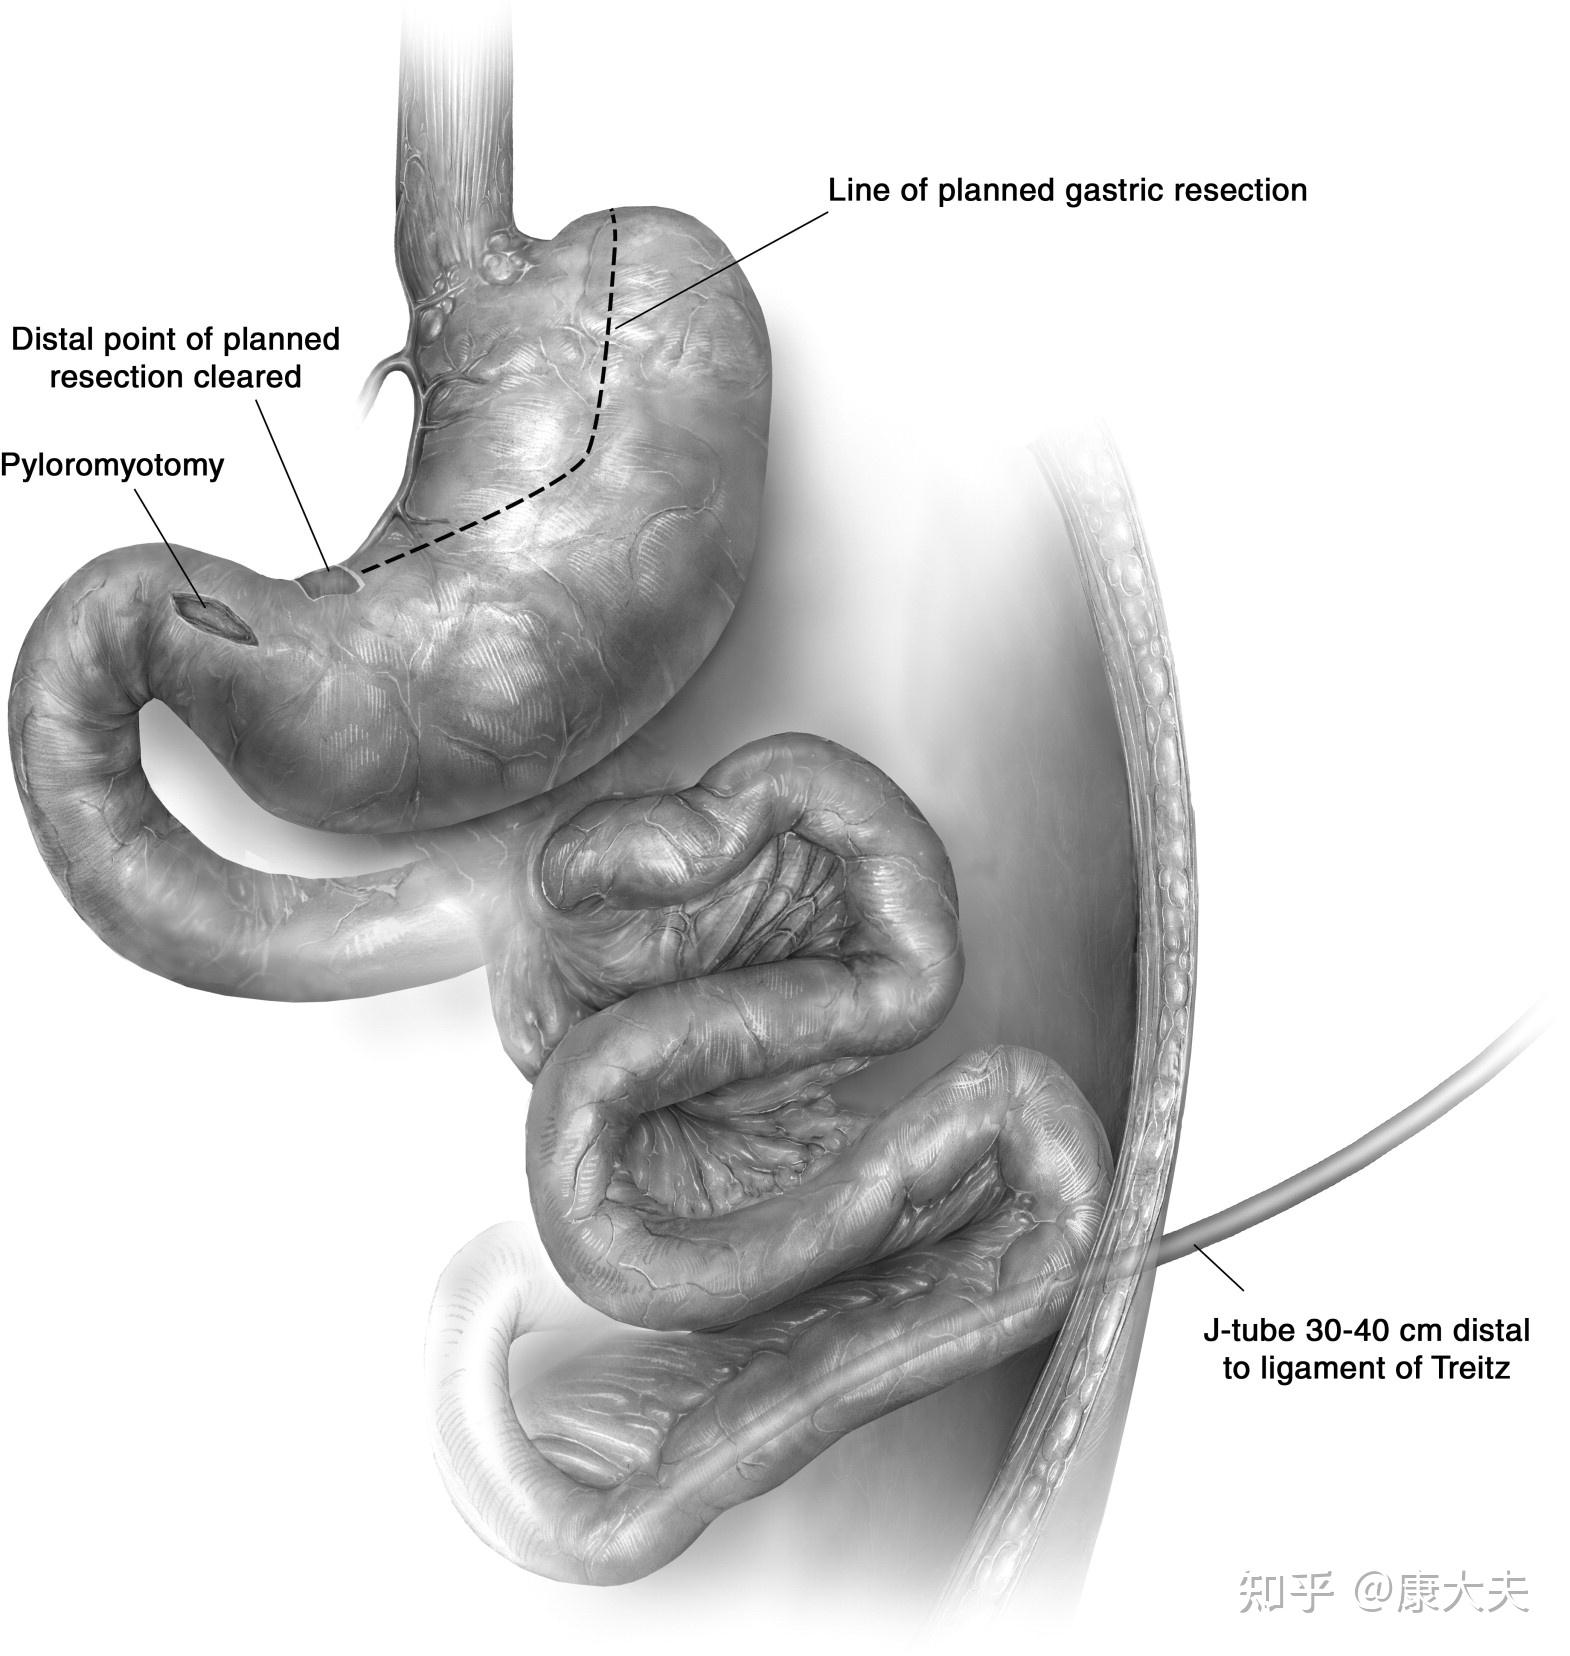 食管空肠吻合术图片